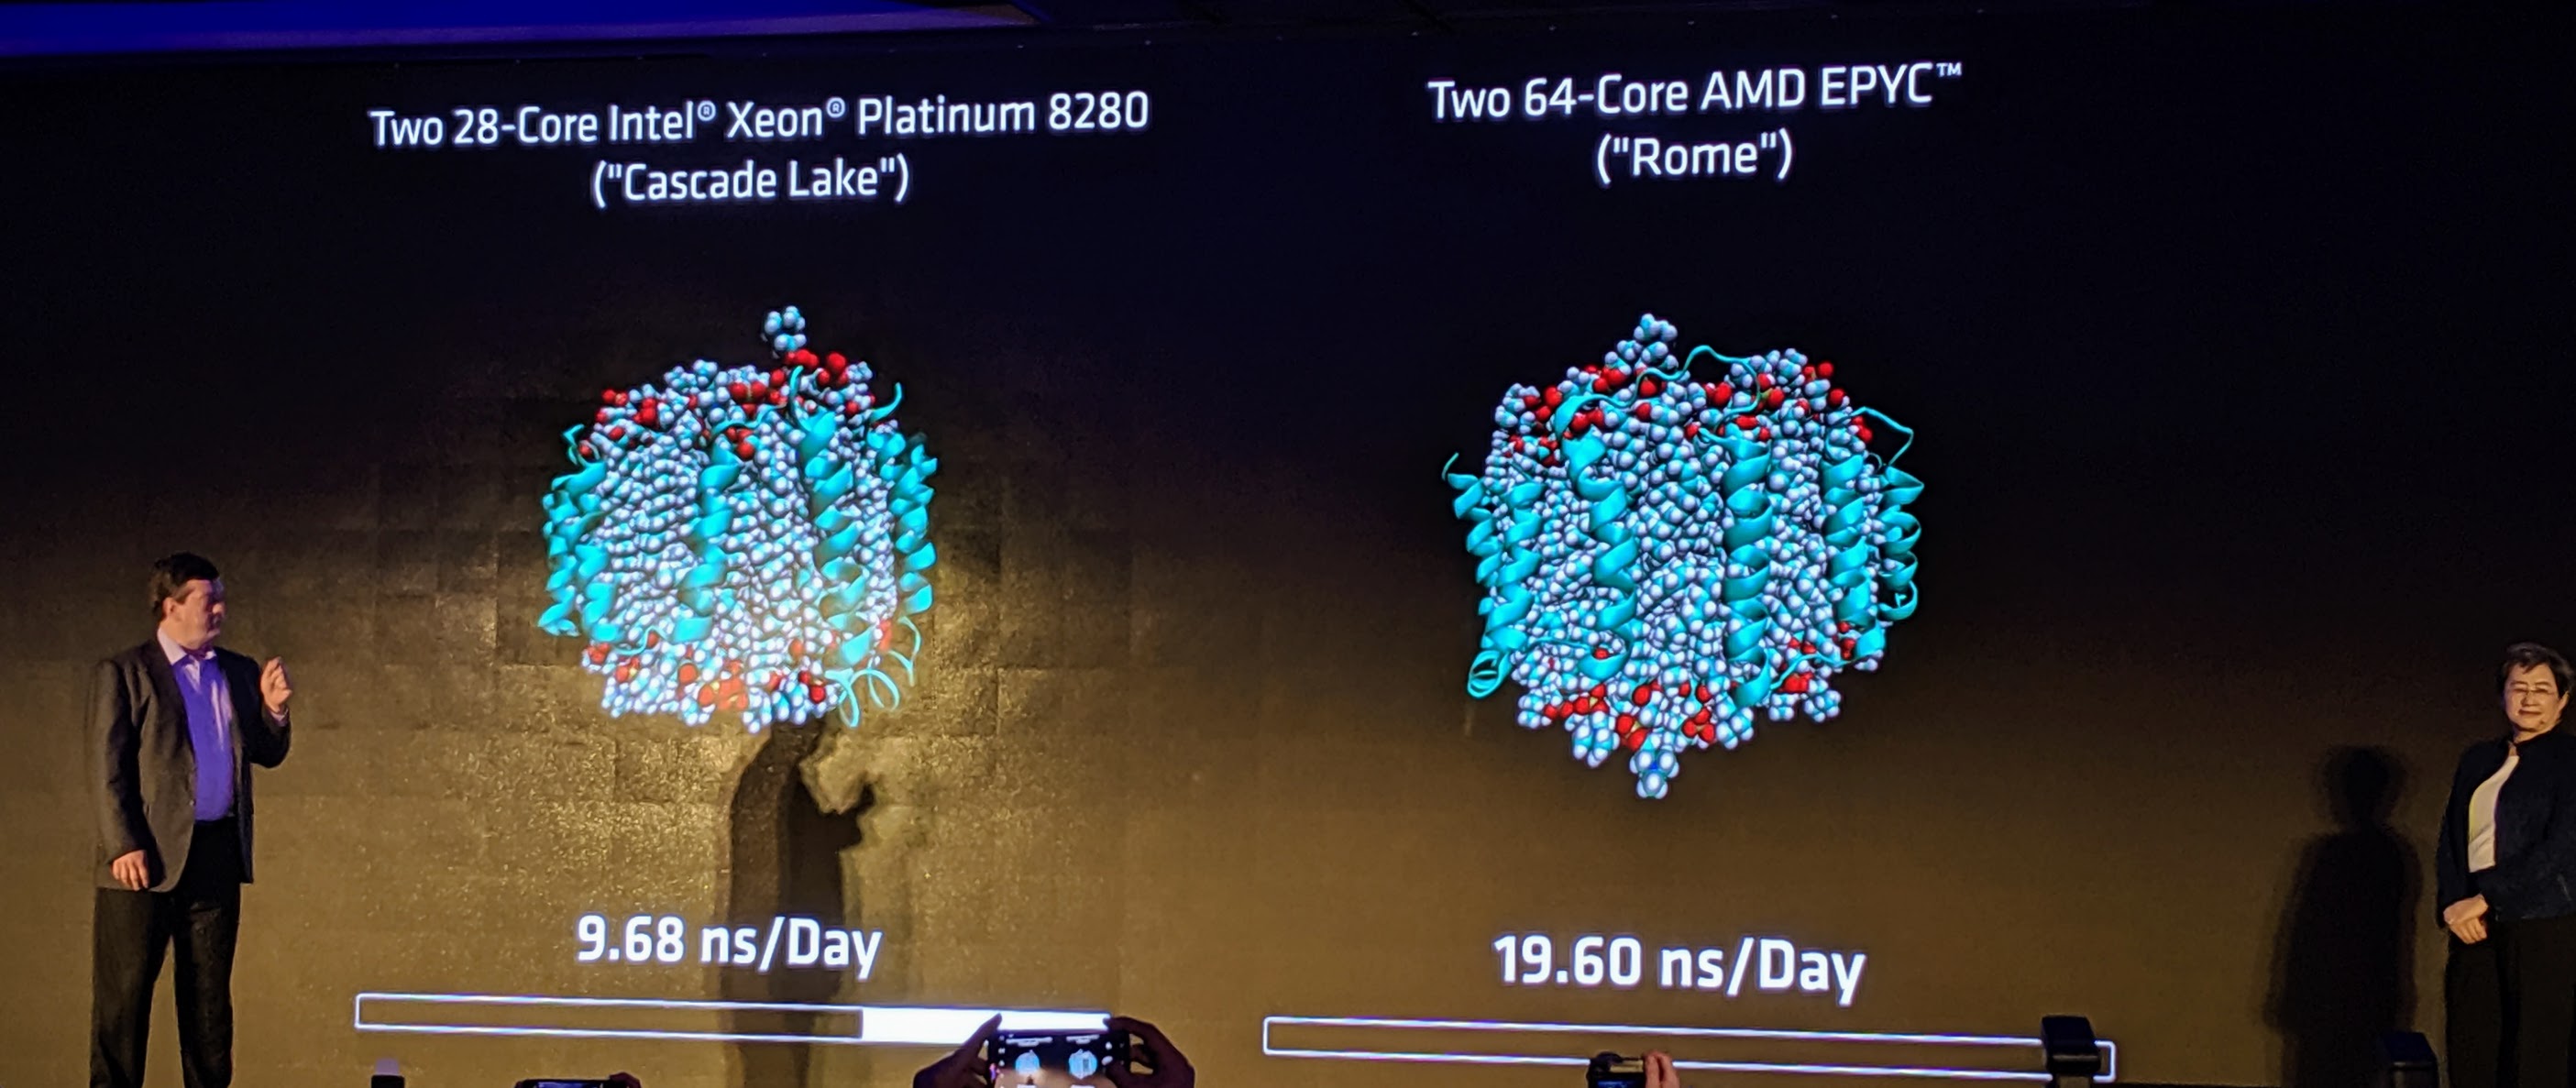 AMD EPYC Rome V Xeon Platinum 8280